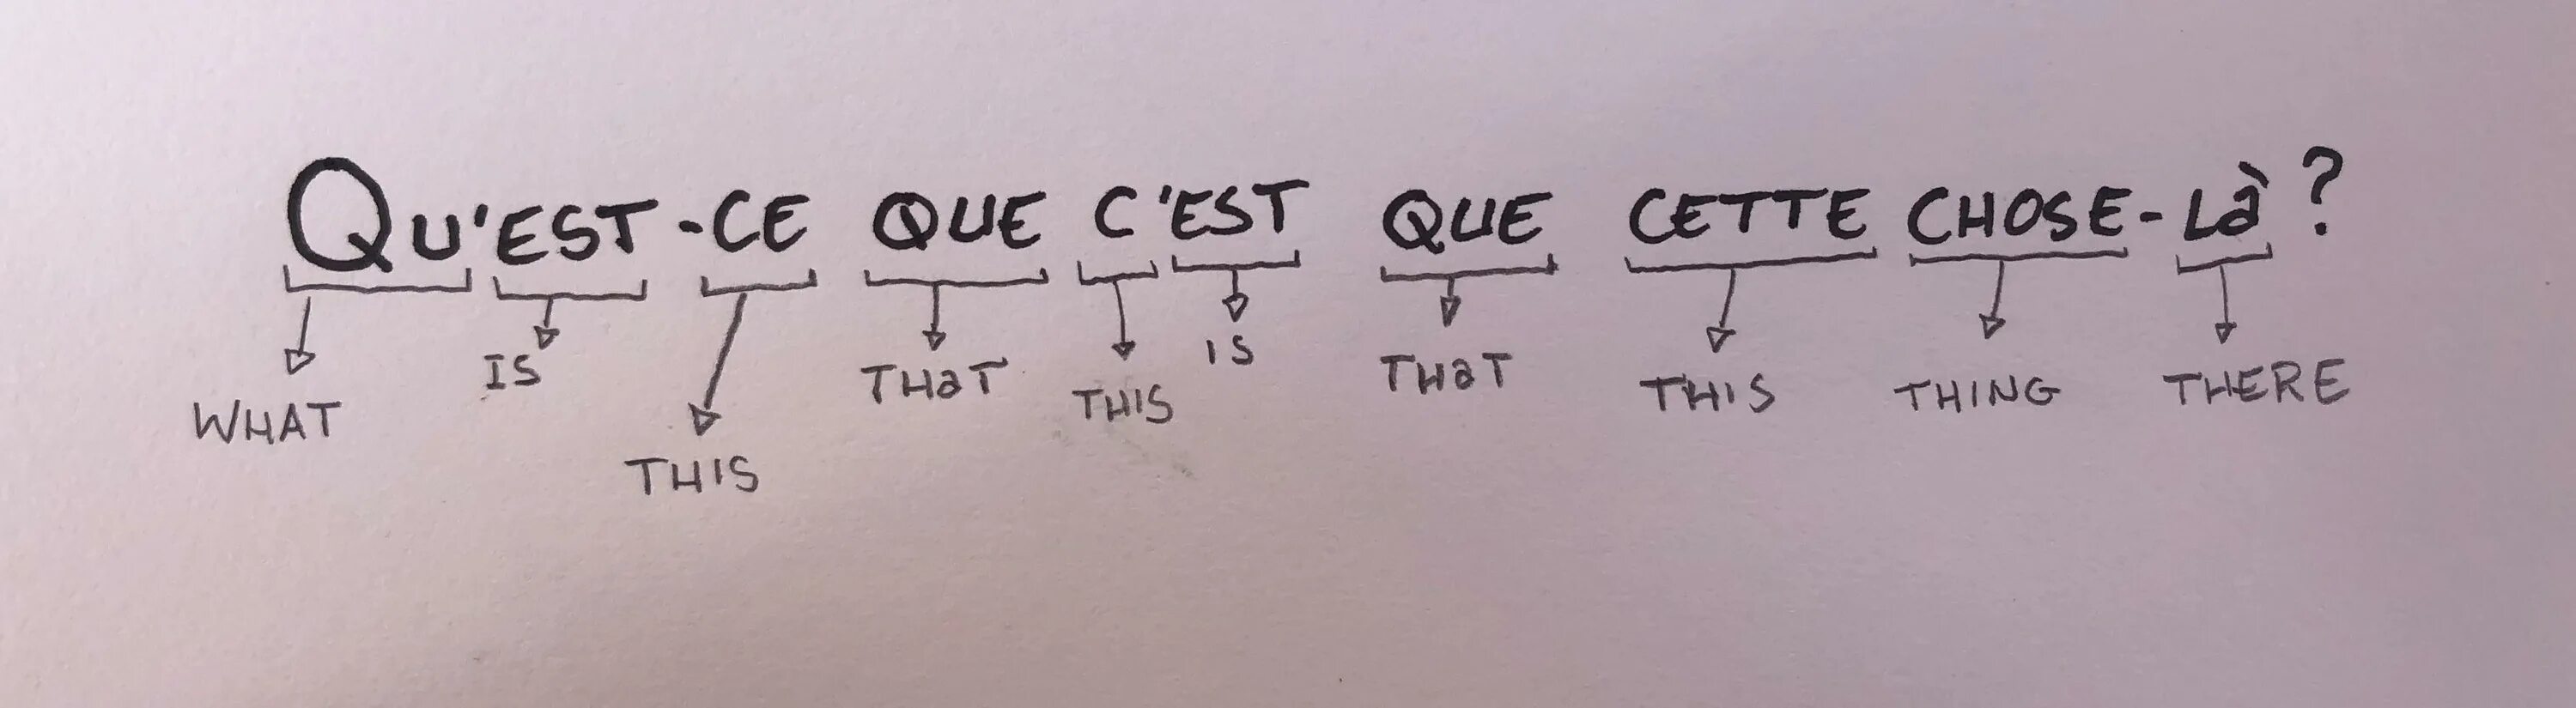 Ce n est que. Qu'est-ce que c'est Мем. Вопросы во французском языке est-ce que. Est французский. Quest ce que c'est перевод.